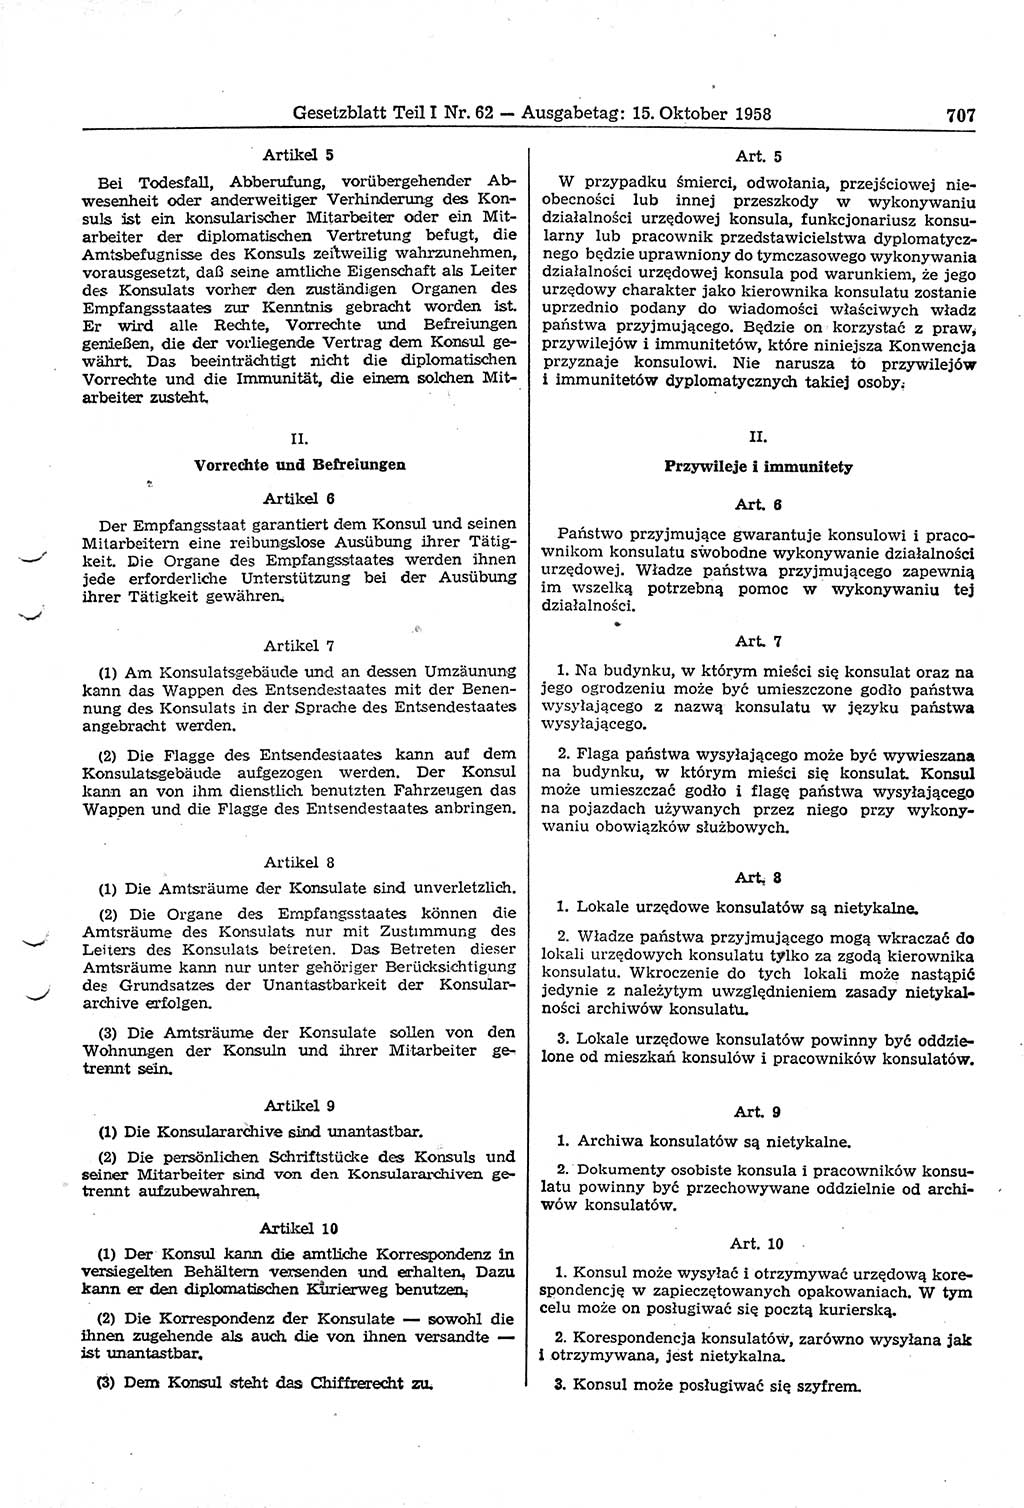 Gesetzblatt (GBl.) der Deutschen Demokratischen Republik (DDR) Teil Ⅰ 1958, Seite 707 (GBl. DDR Ⅰ 1958, S. 707)